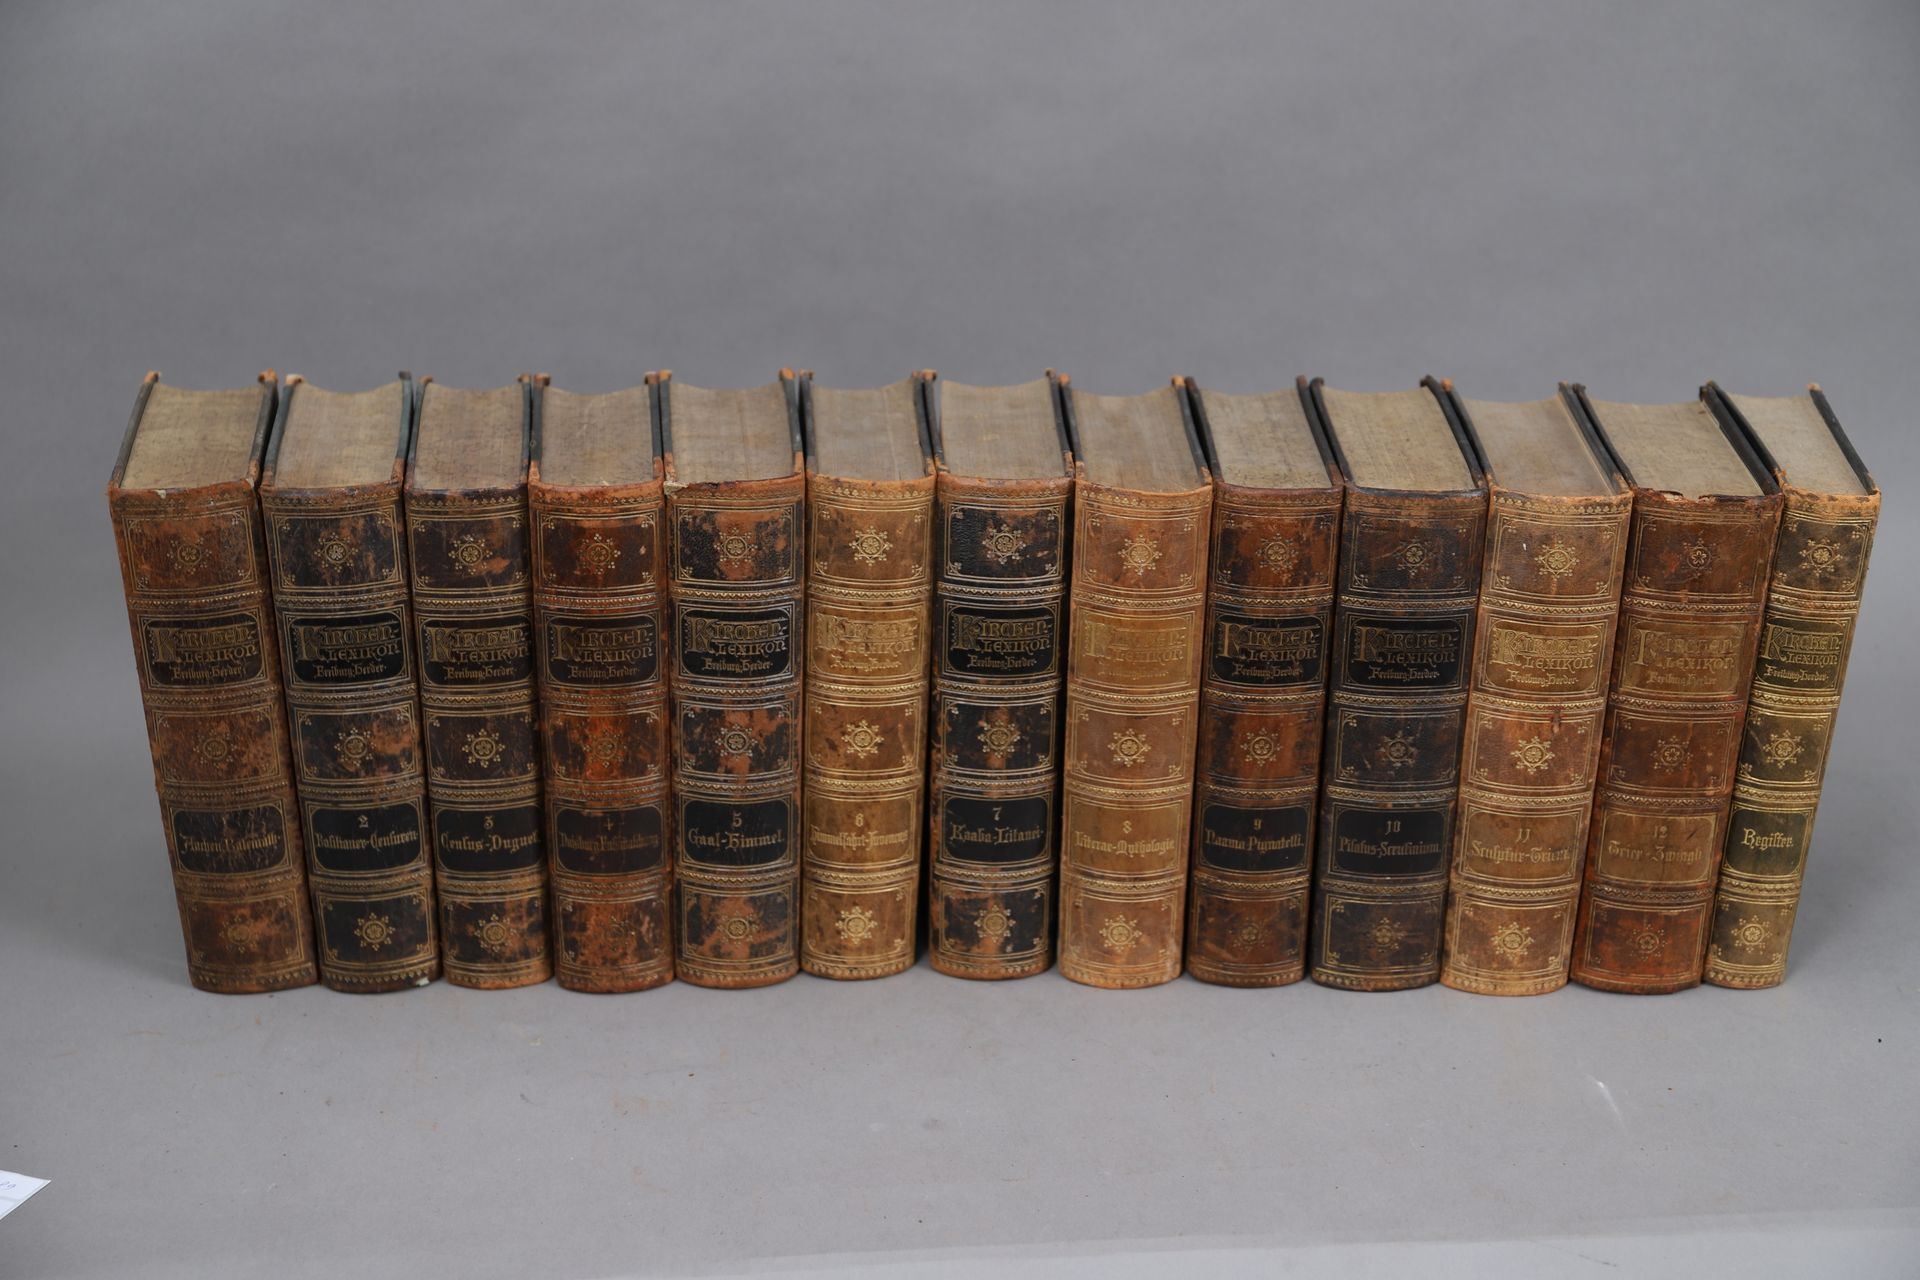 Null TRABAJO RELIGIOSO en alemán 

1884

13 volúmenes encuadernados.